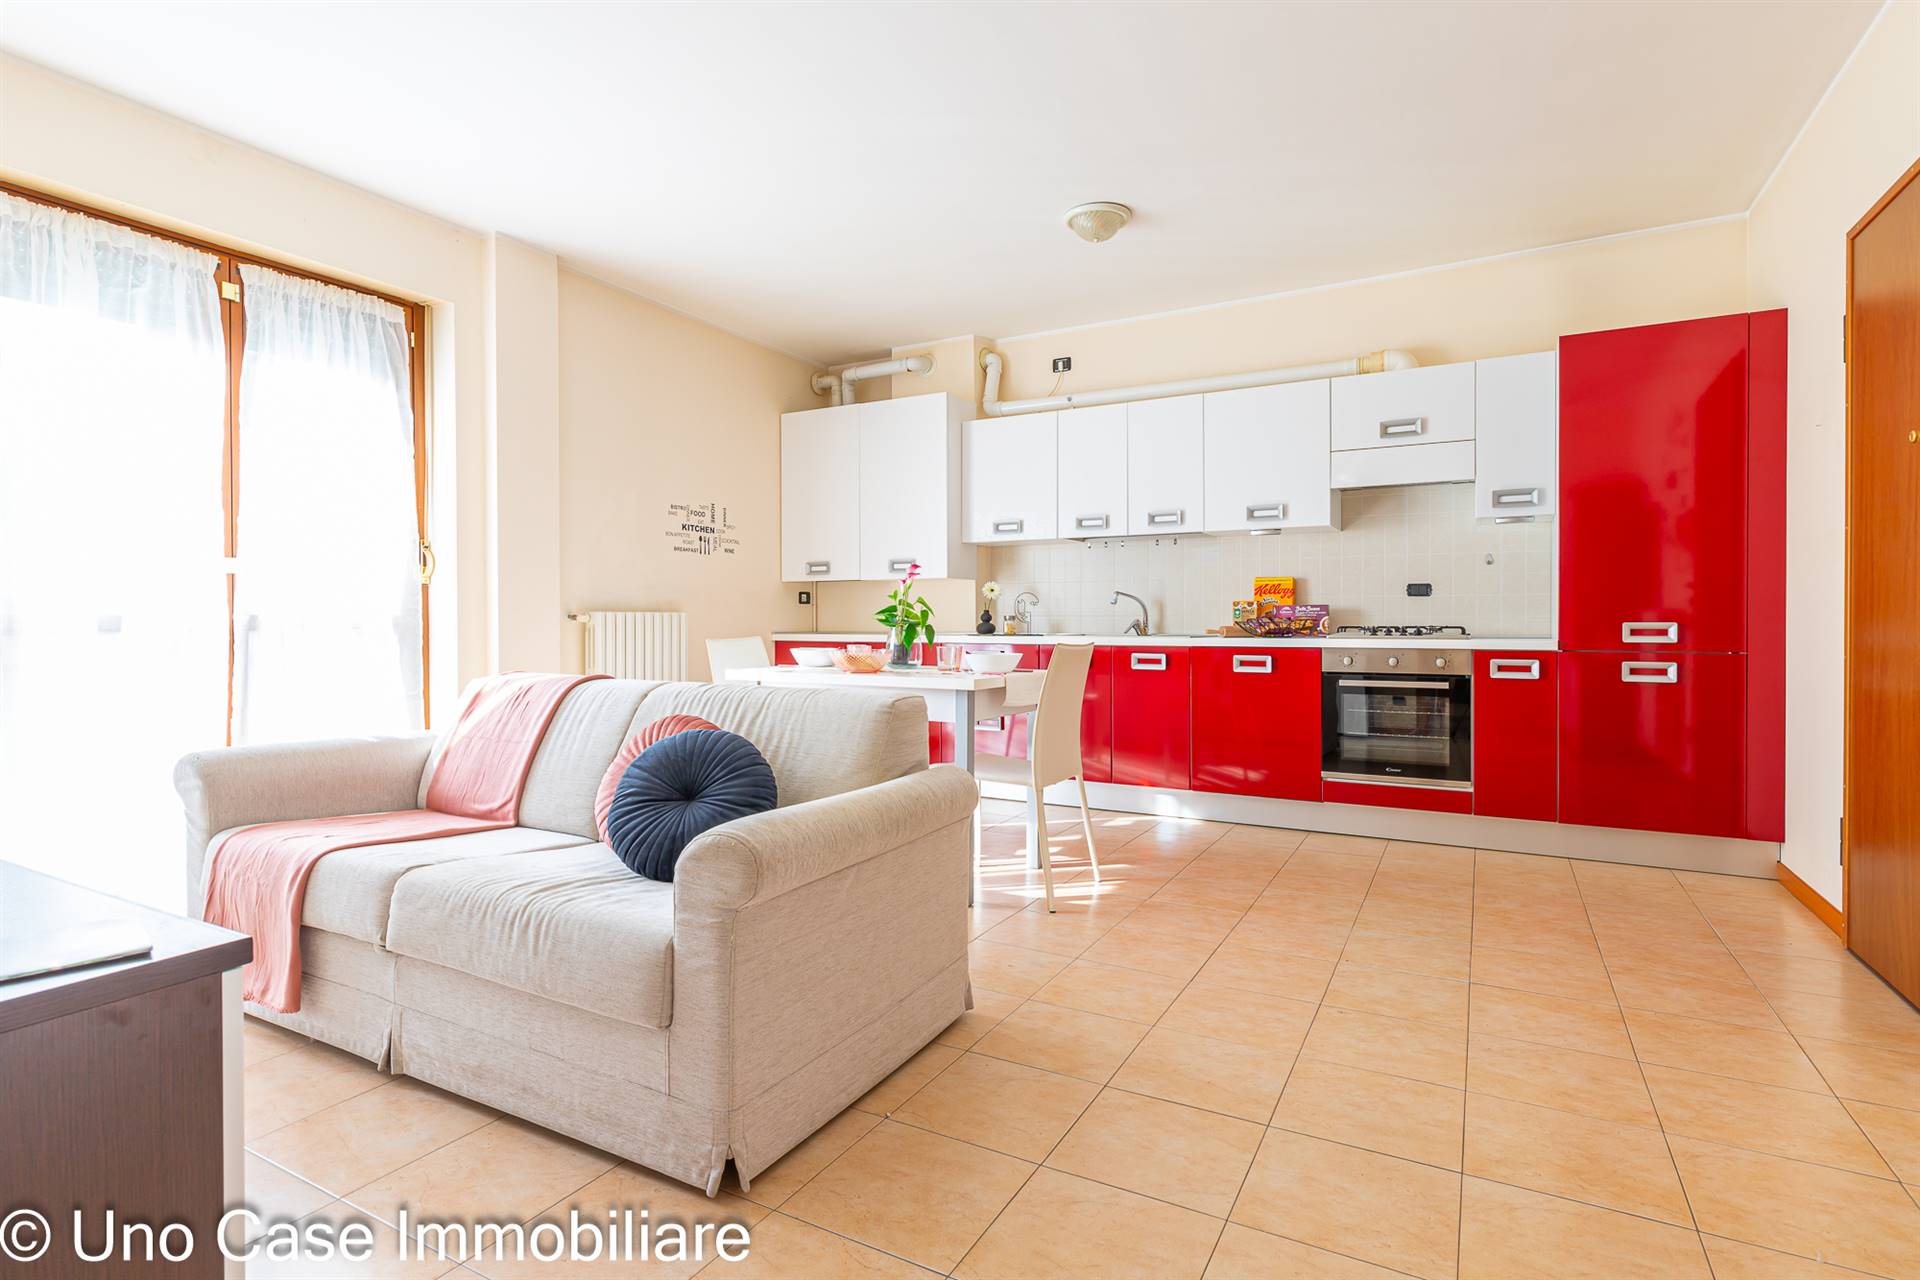 Appartamento in vendita a Banchette, 2 locali, zona Zona: Borgonuovo, prezzo € 64.000 | CambioCasa.it